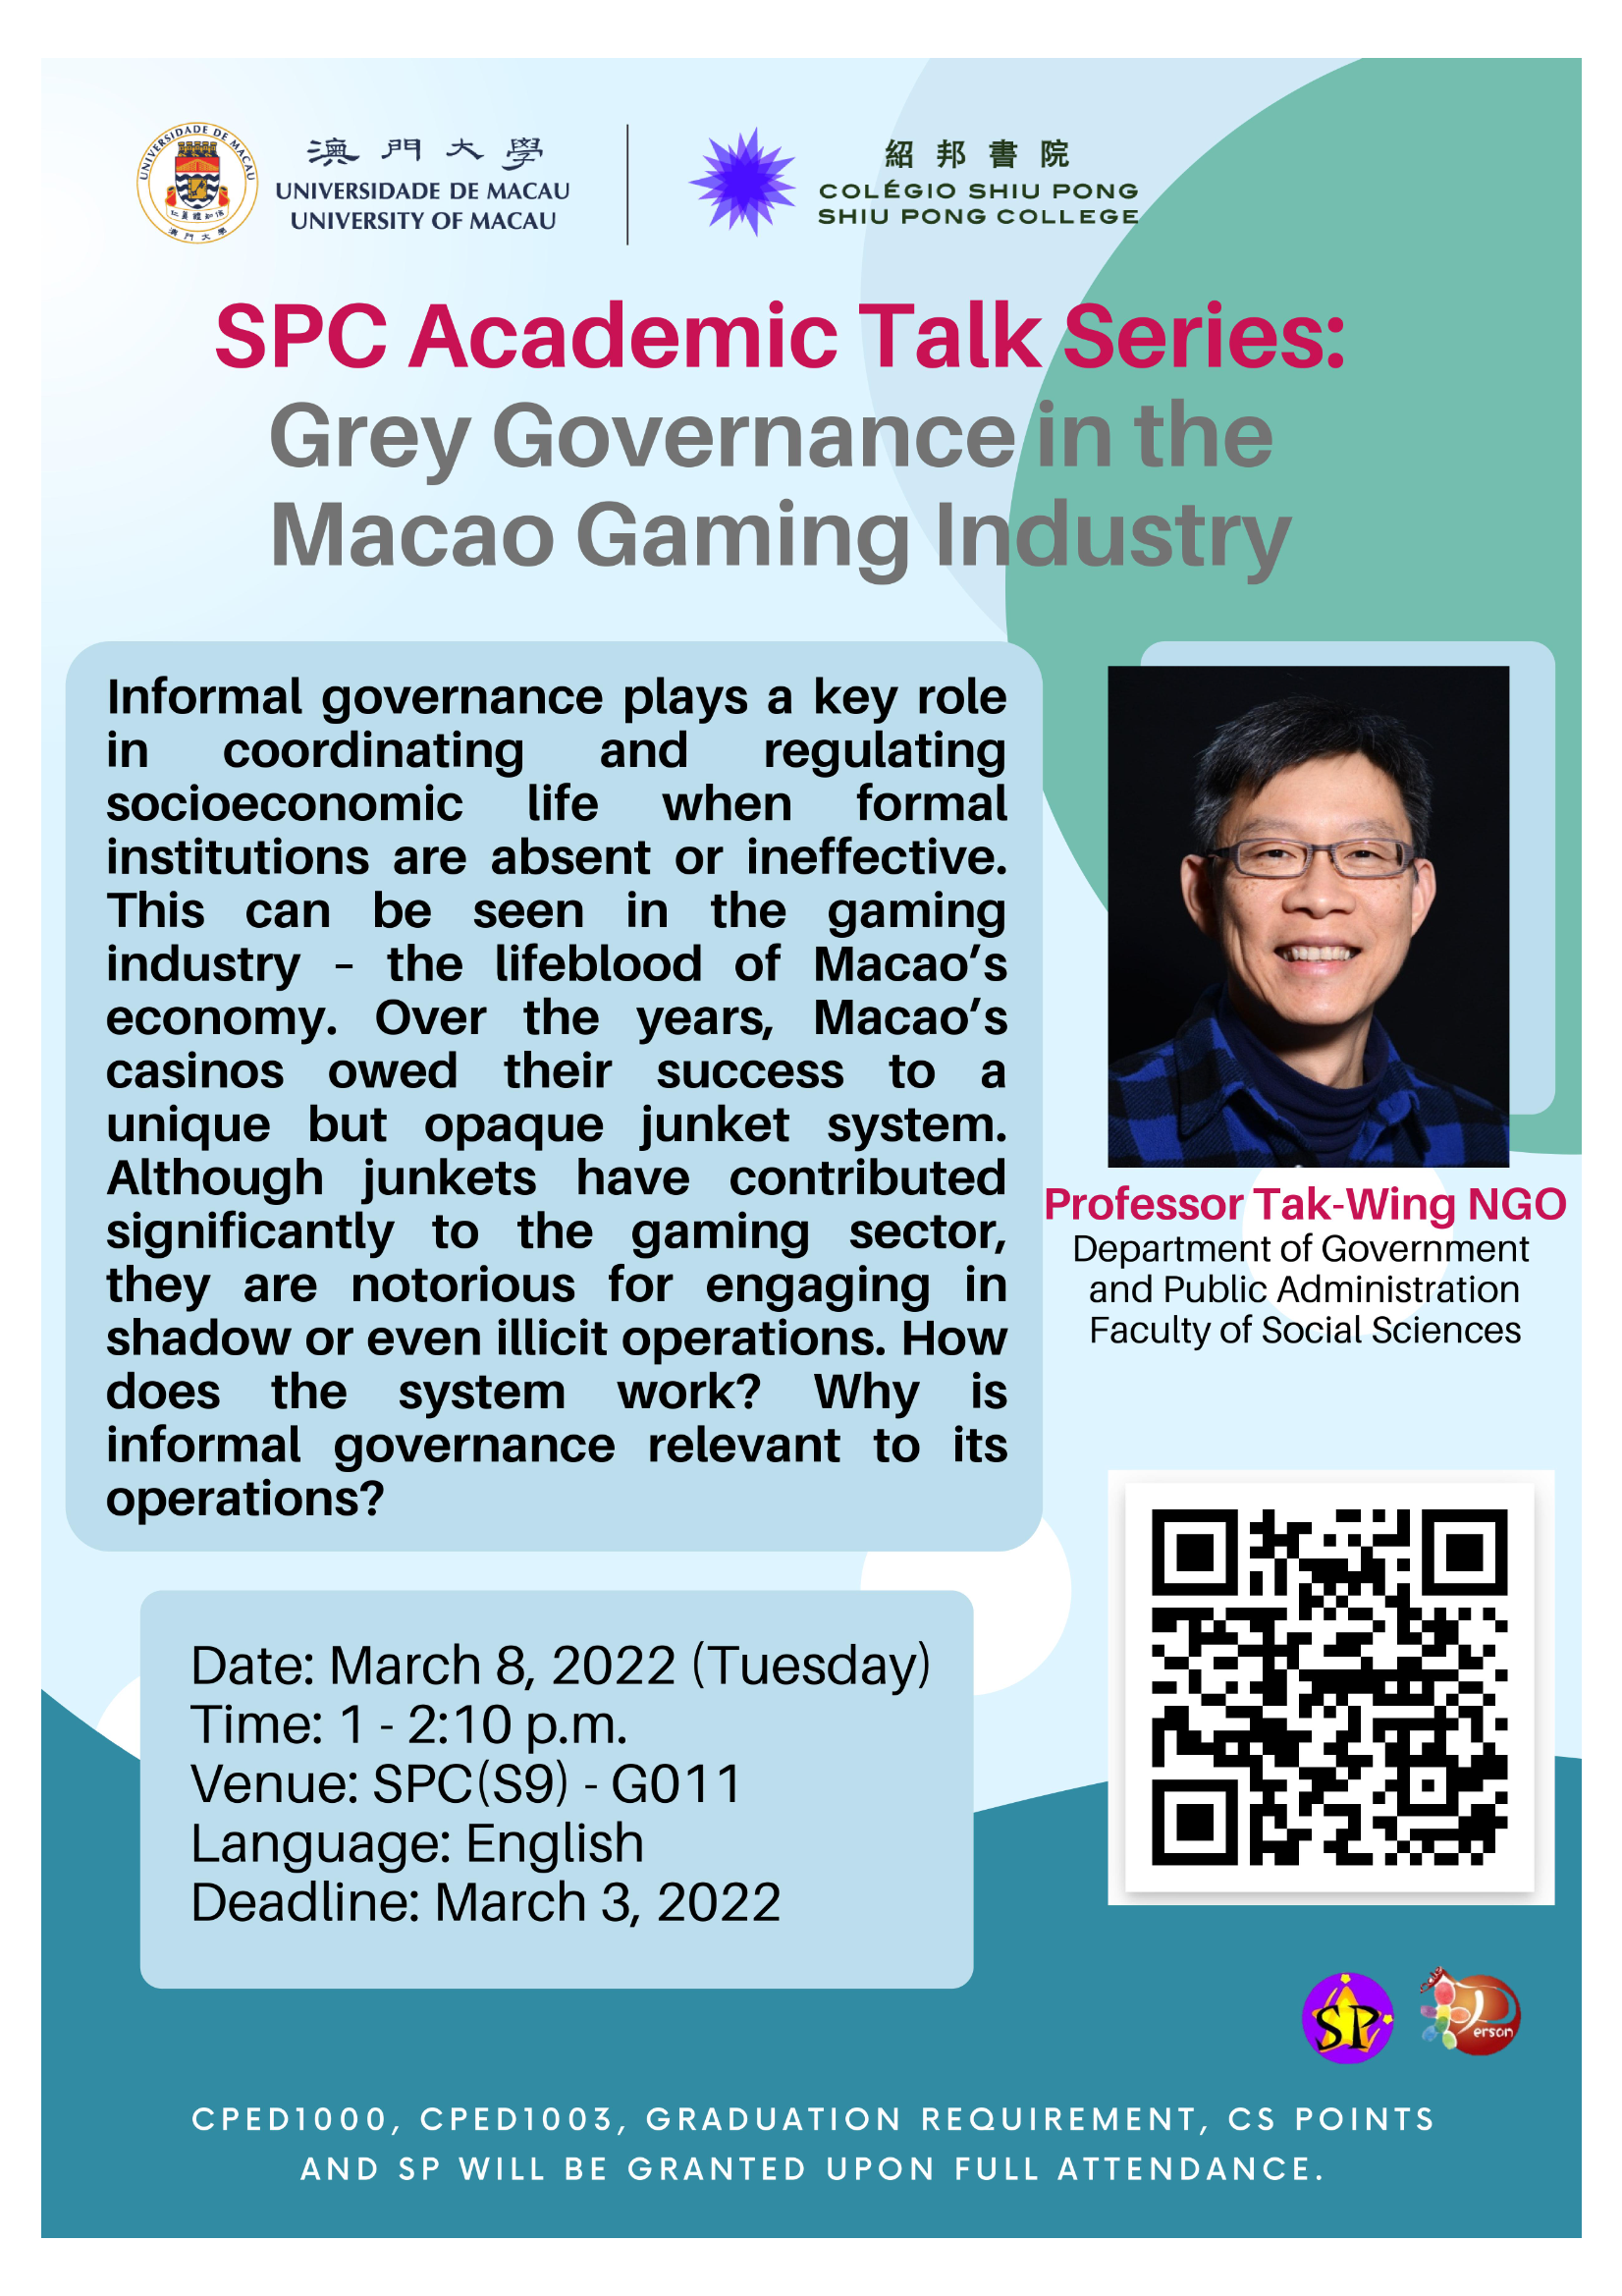 紹邦書院學術系列講座 —— “Grey Governance in the Macao Gaming Industry”